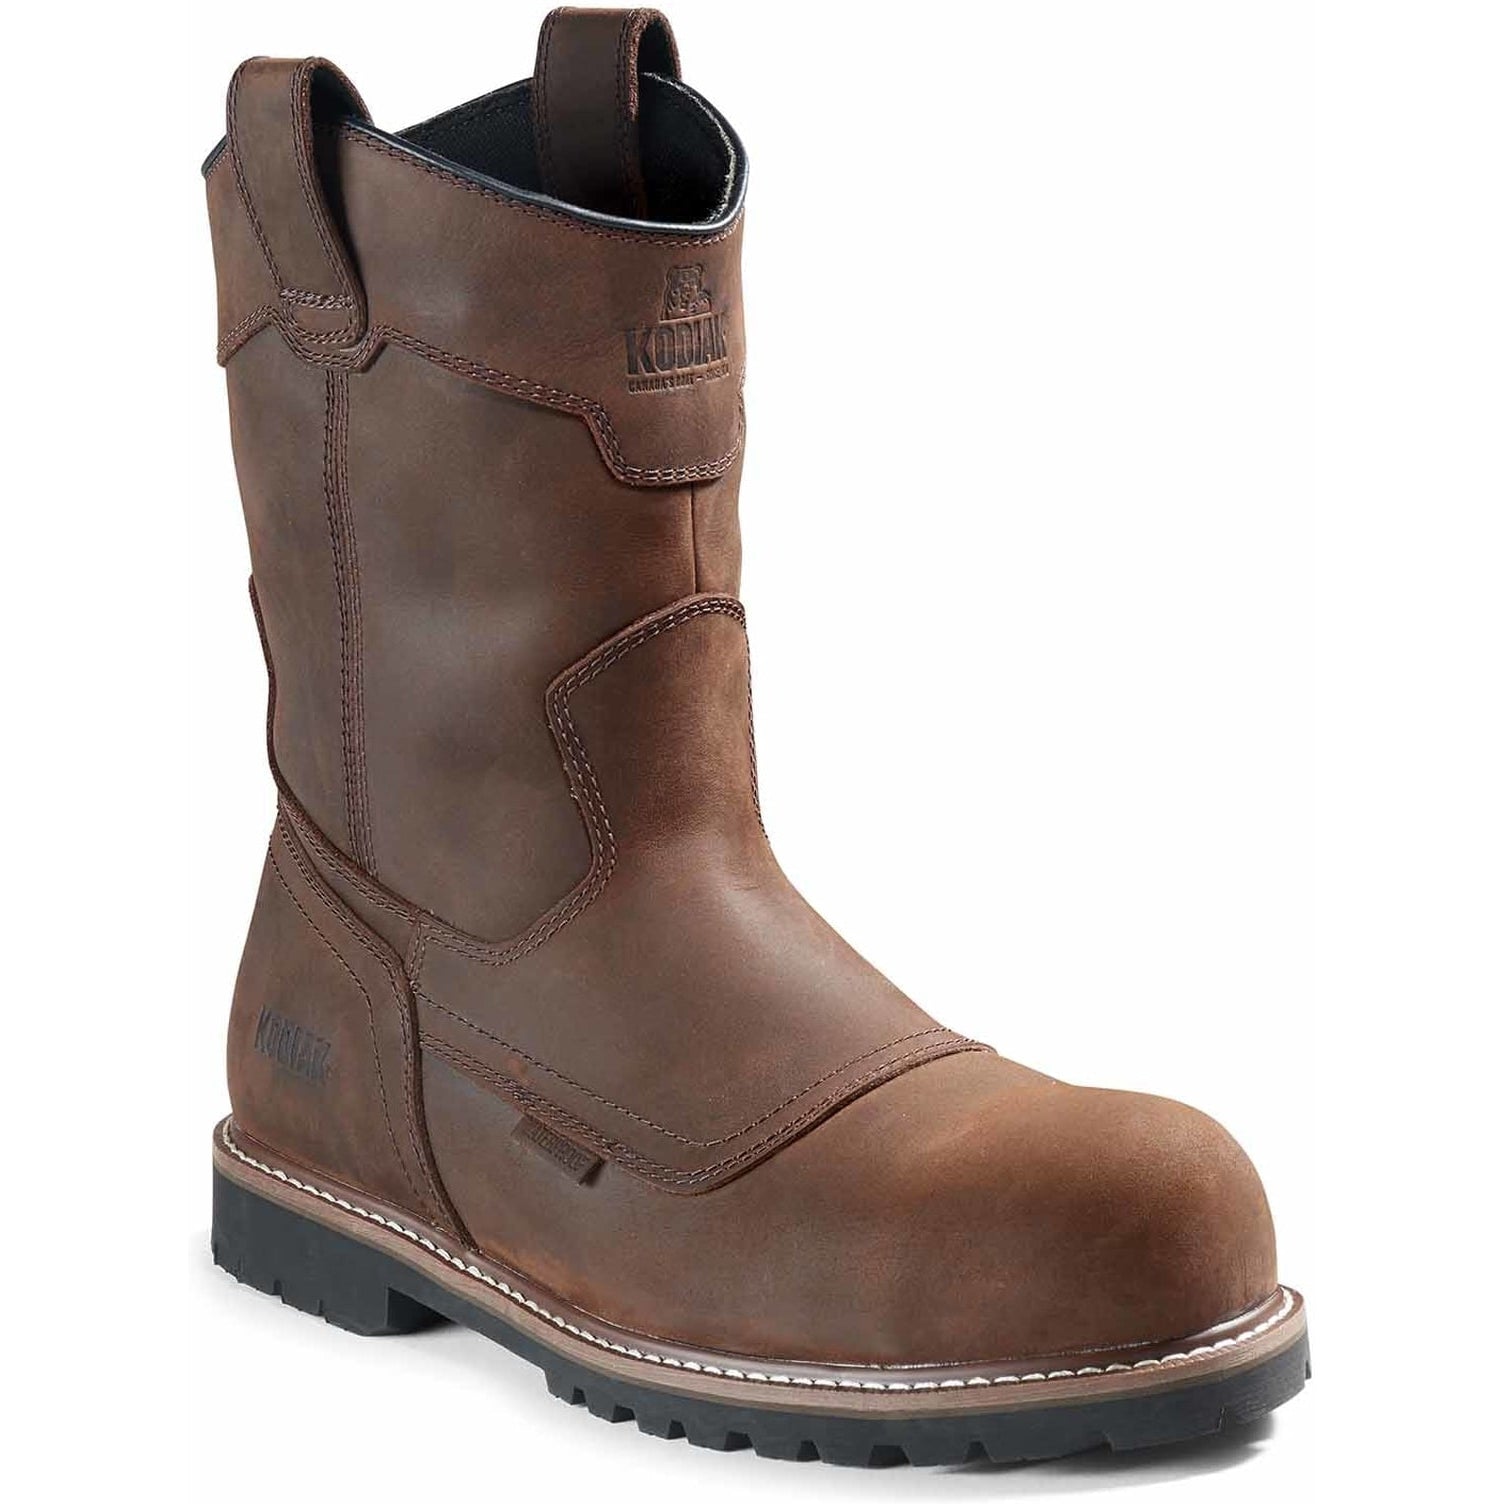 Kodiak Men's Mckinney Comp Toe WP Wellington Work Boot -Brown- 4TERDB 7 / Wide / Dark Brown - Overlook Boots